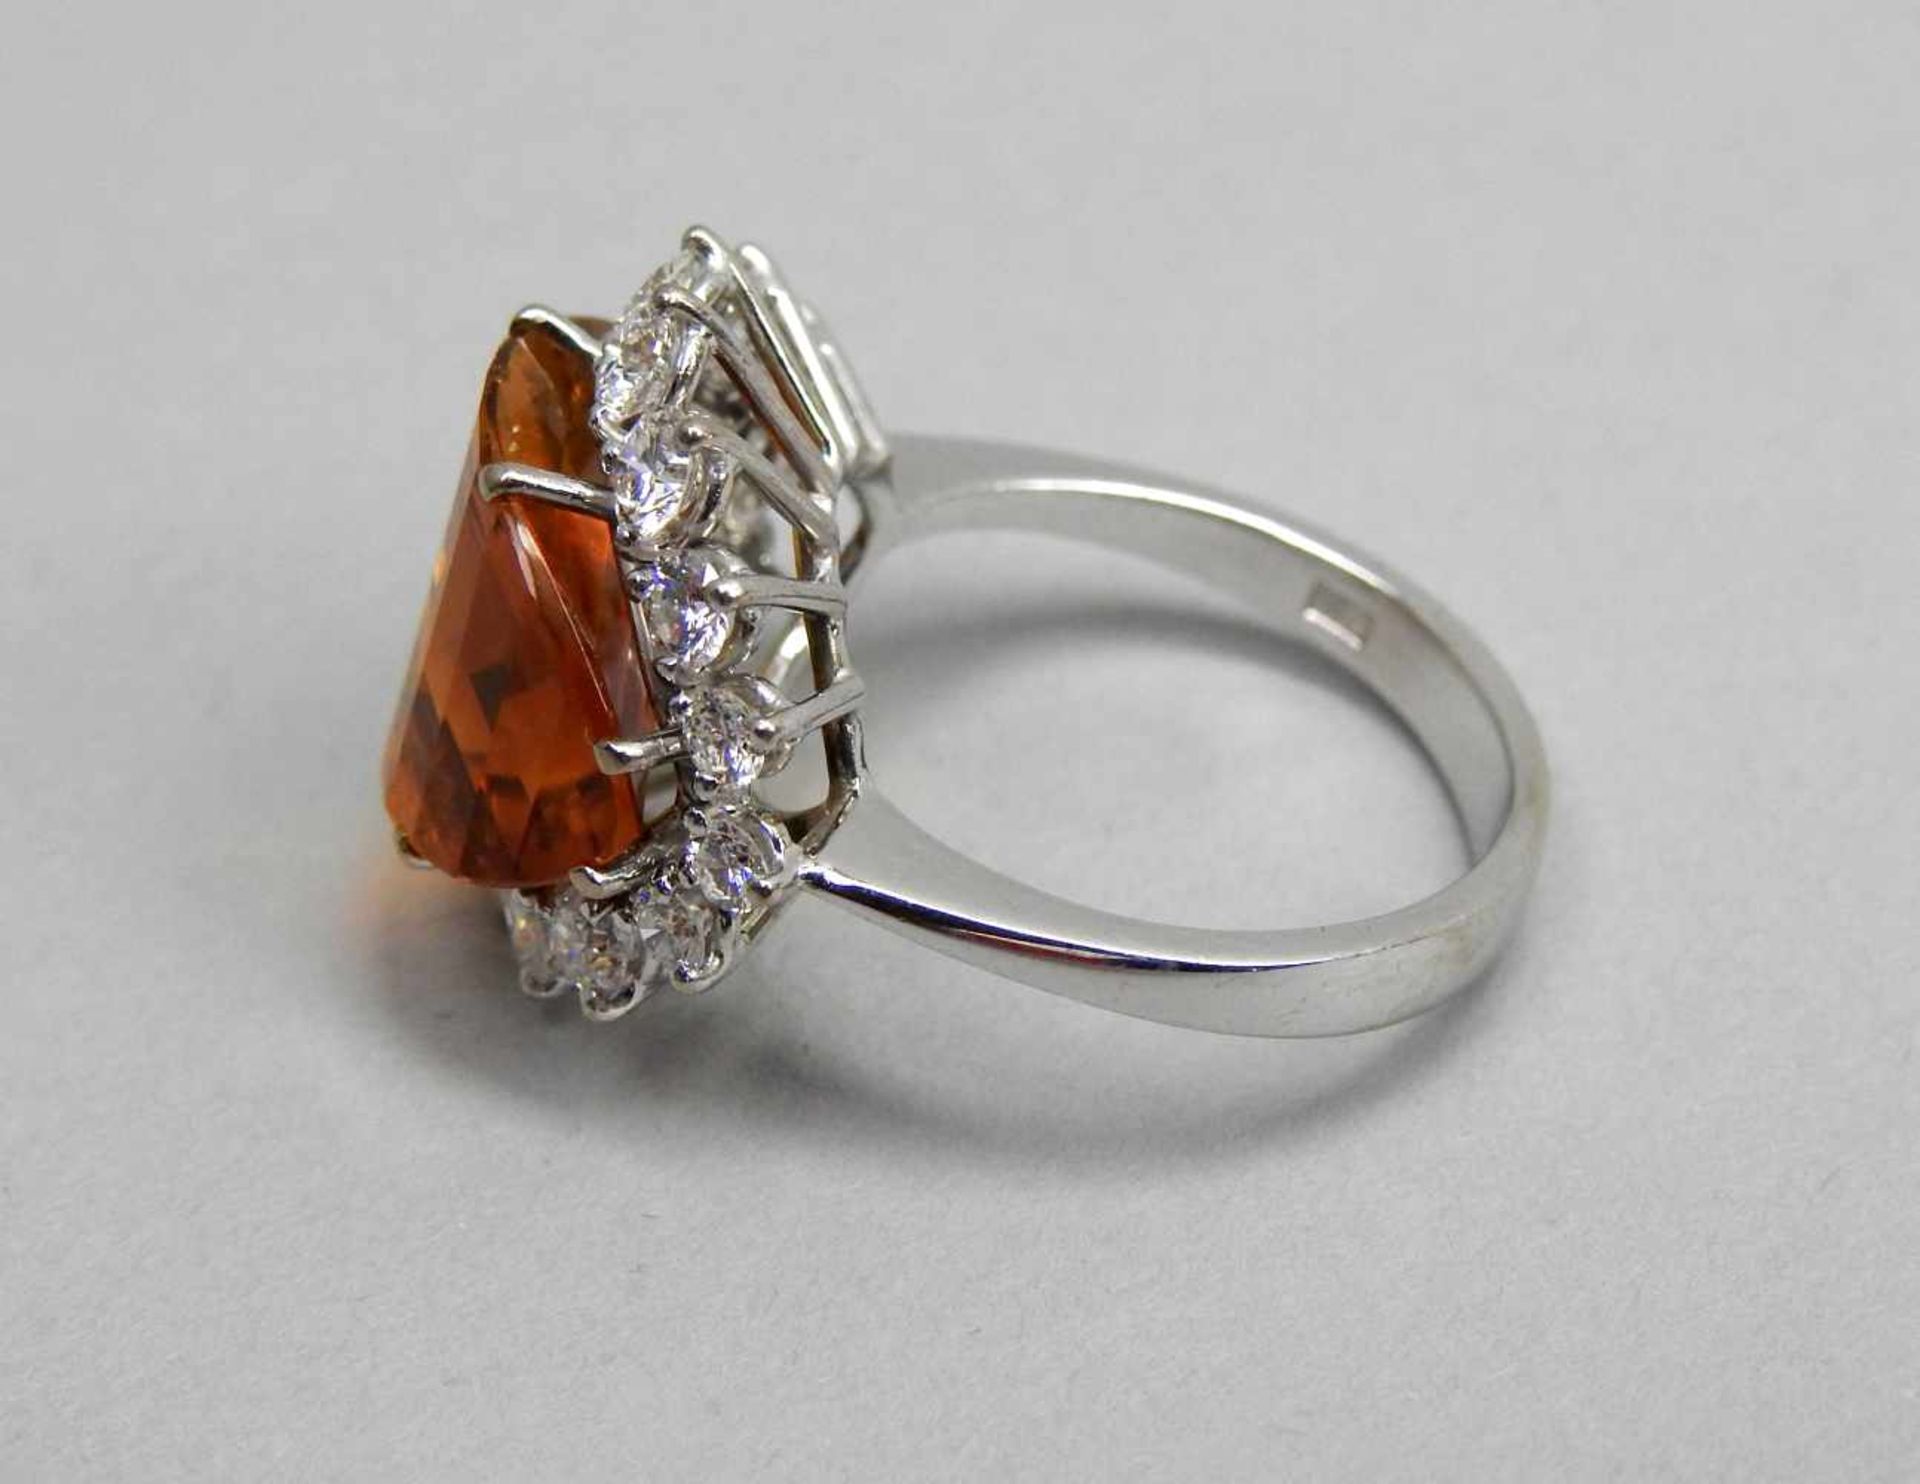 Großer Citrin-Diamant-Ring18 K. Weißgold mit großem Citrin, ca. 5 ct und Diamanten, ca. 1 ct. - Bild 2 aus 3